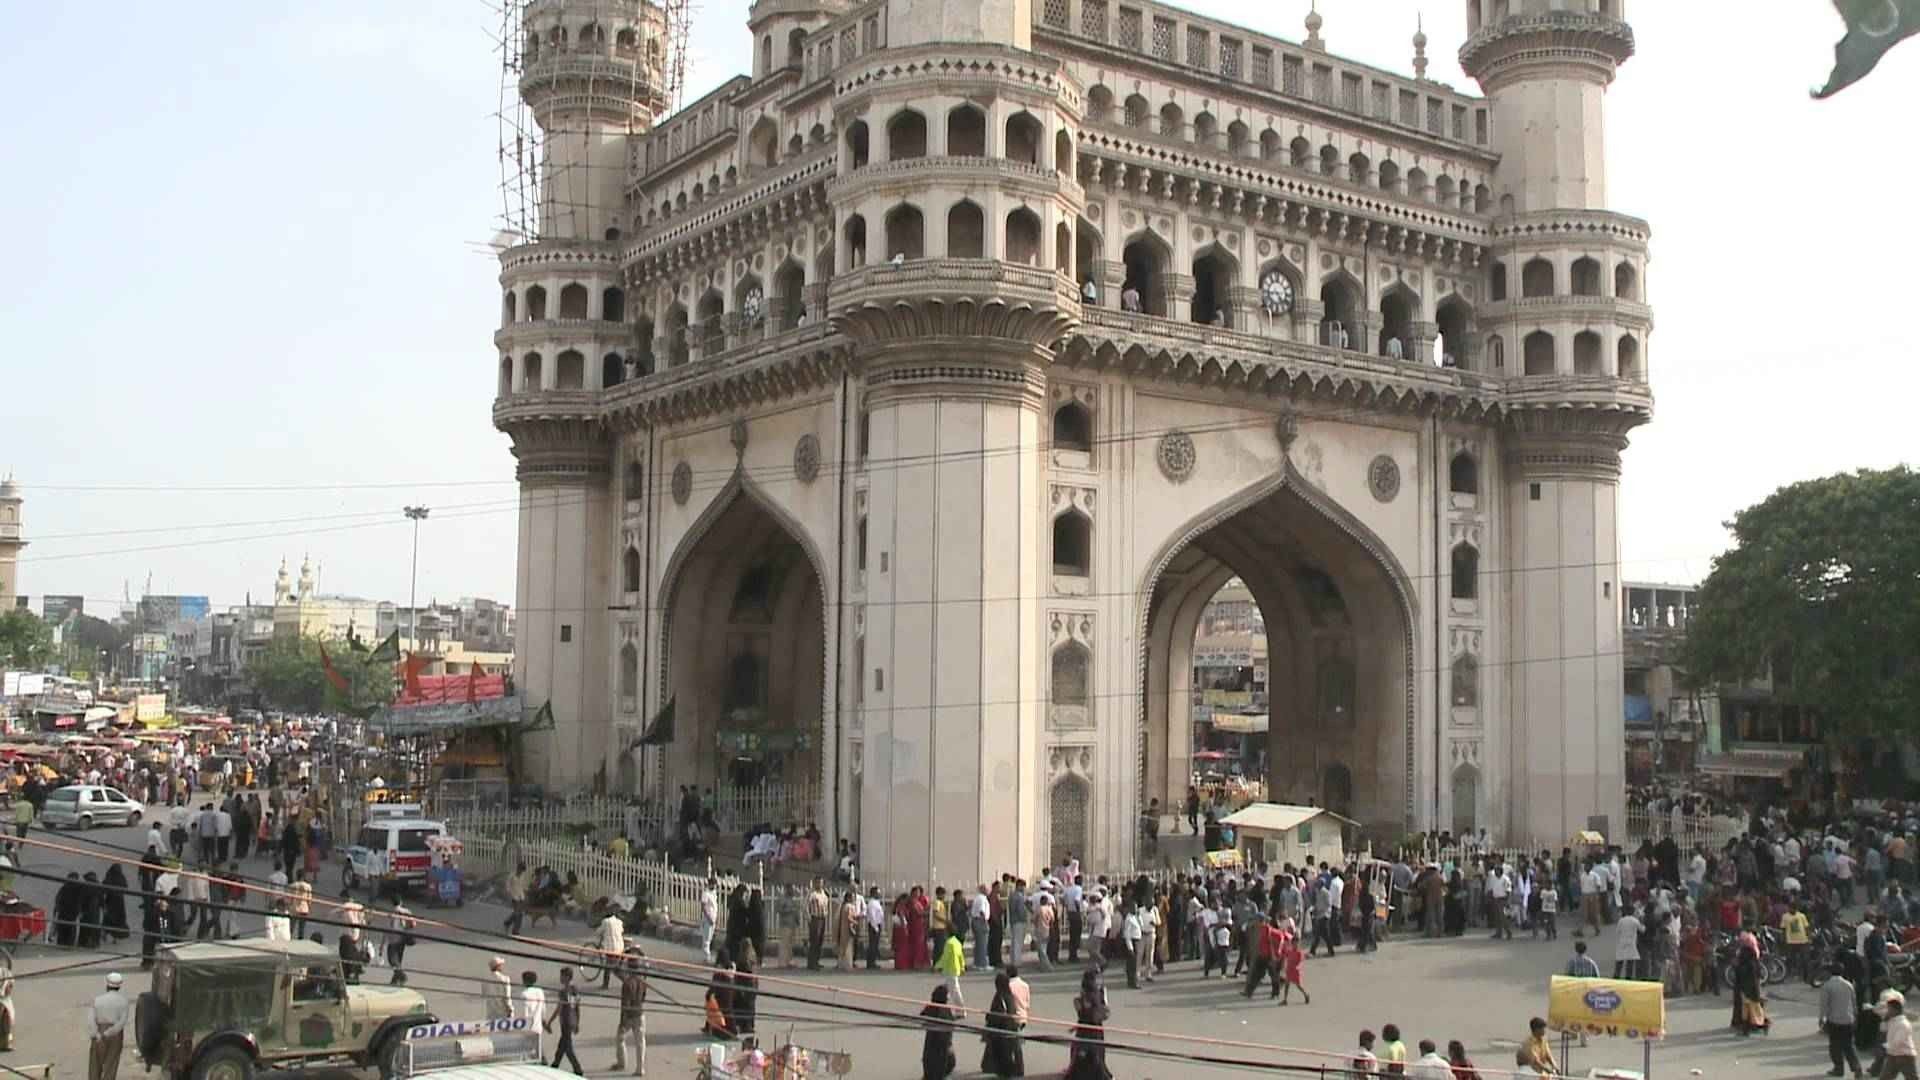 في حيدر أباد الهند .. أجمل 8 اماكن سياحية - Tourism in Hyderabad India ... the most beautiful 8 wonderful tourist places